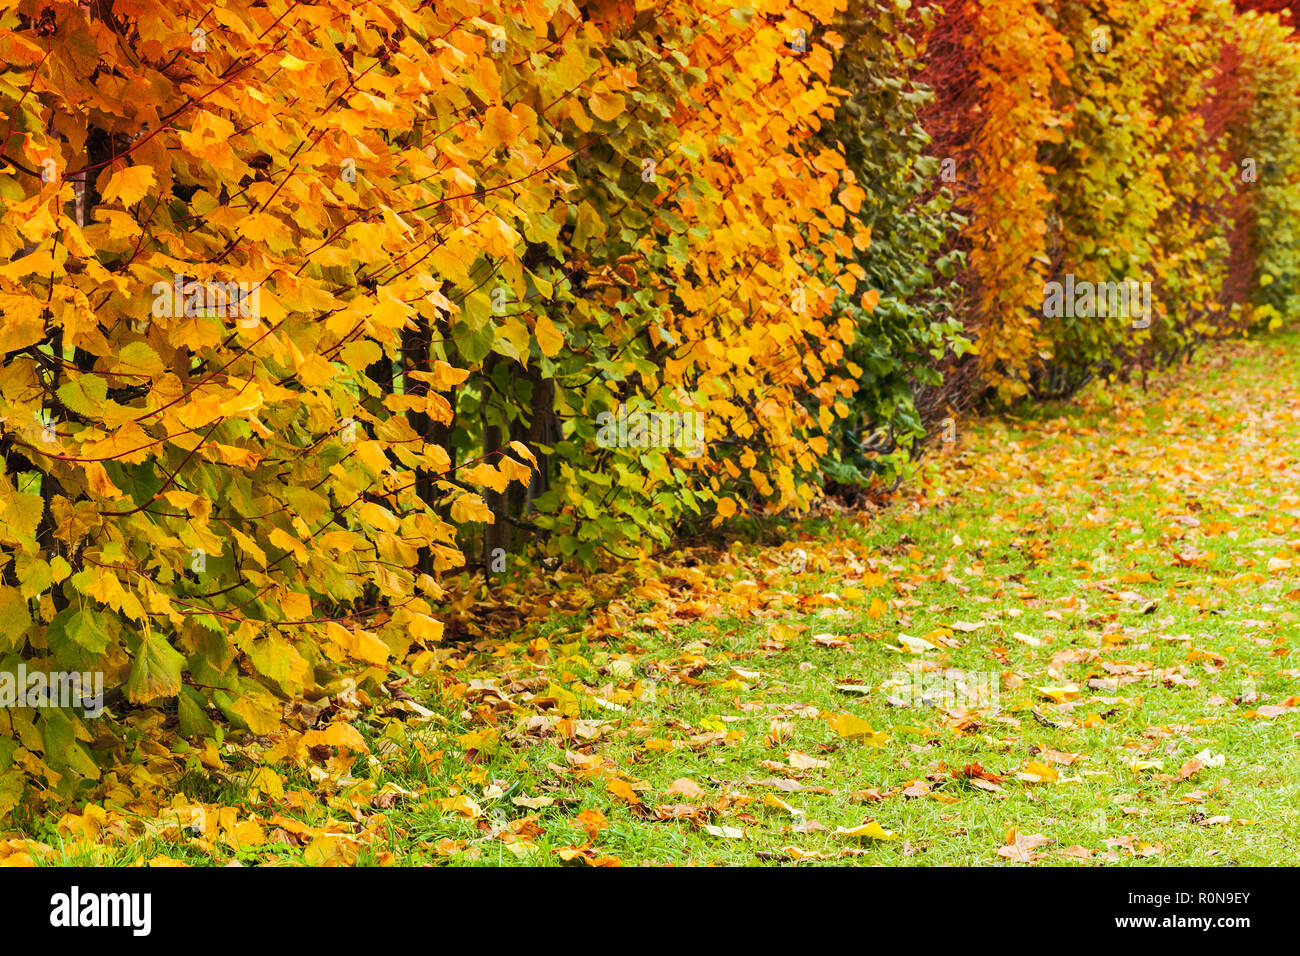 Dekorative Sträucher mit bunten Blätter wachsen in einer Reihe im Herbst Park, Herbst Hintergrund Stockfoto